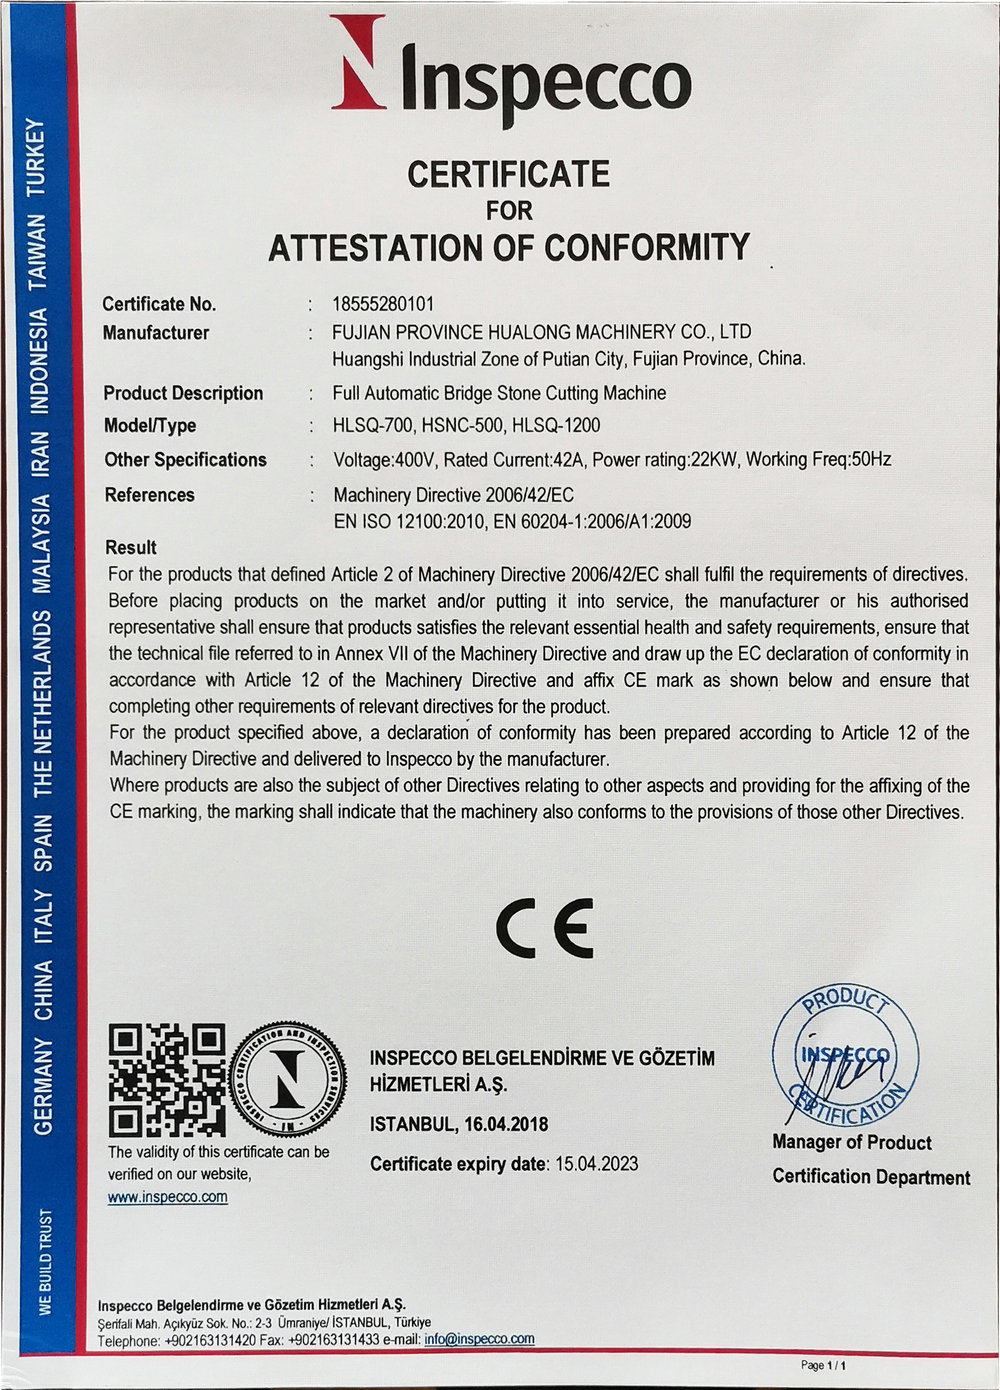 Full Automatic Bridge Stone Cutting Machine CE certificate